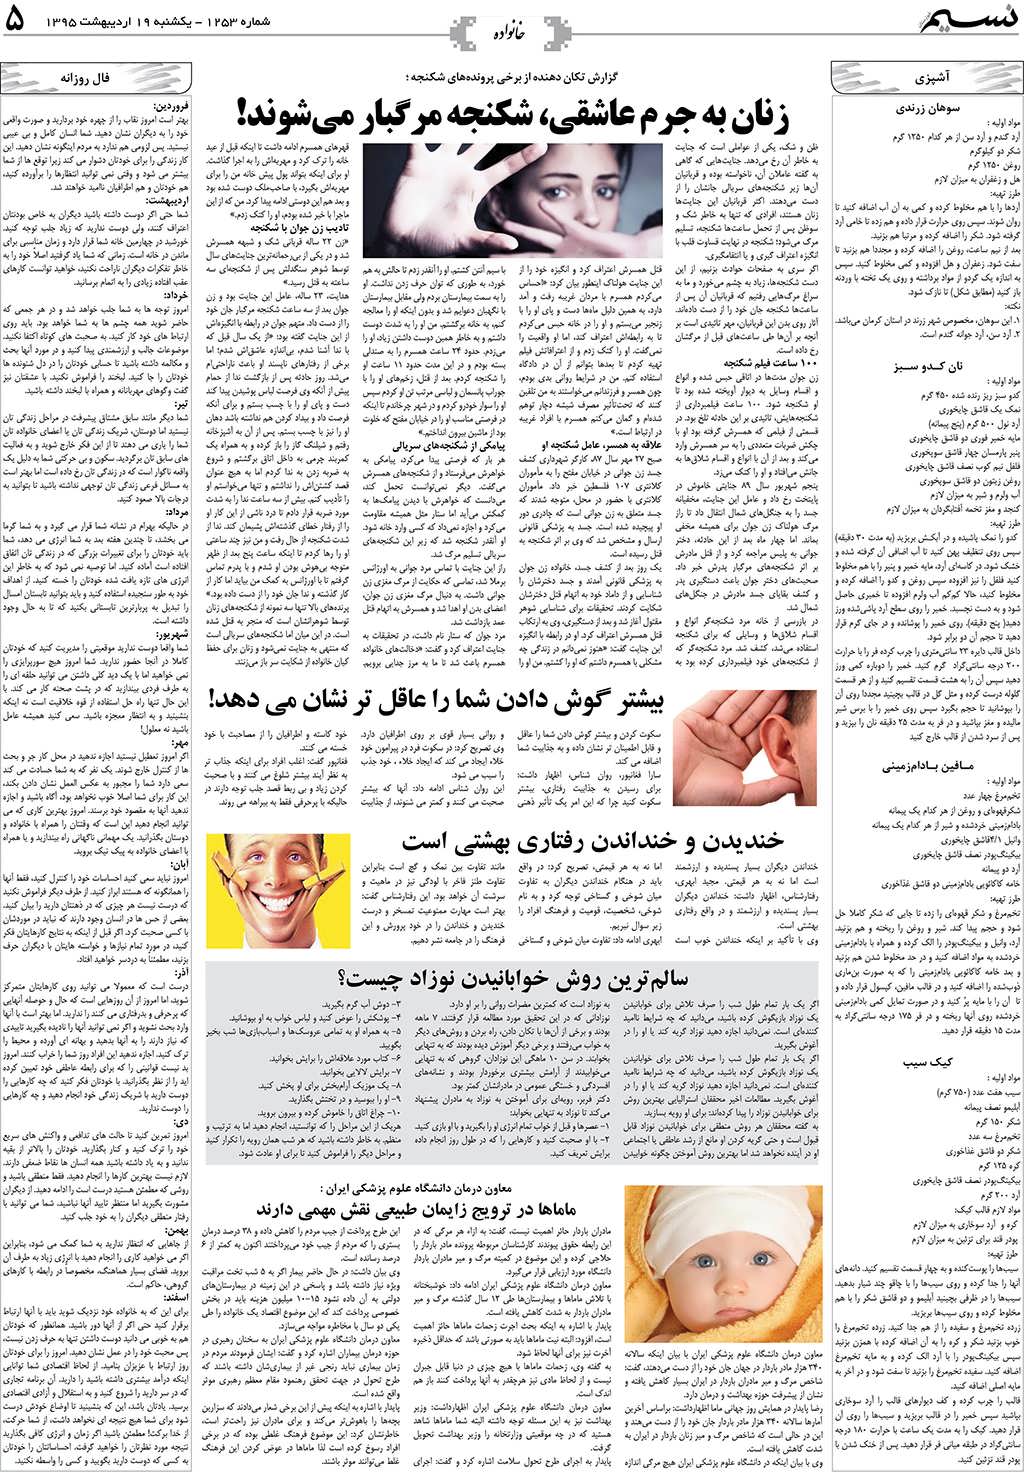 صفحه خانواده روزنامه نسیم شماره 1253